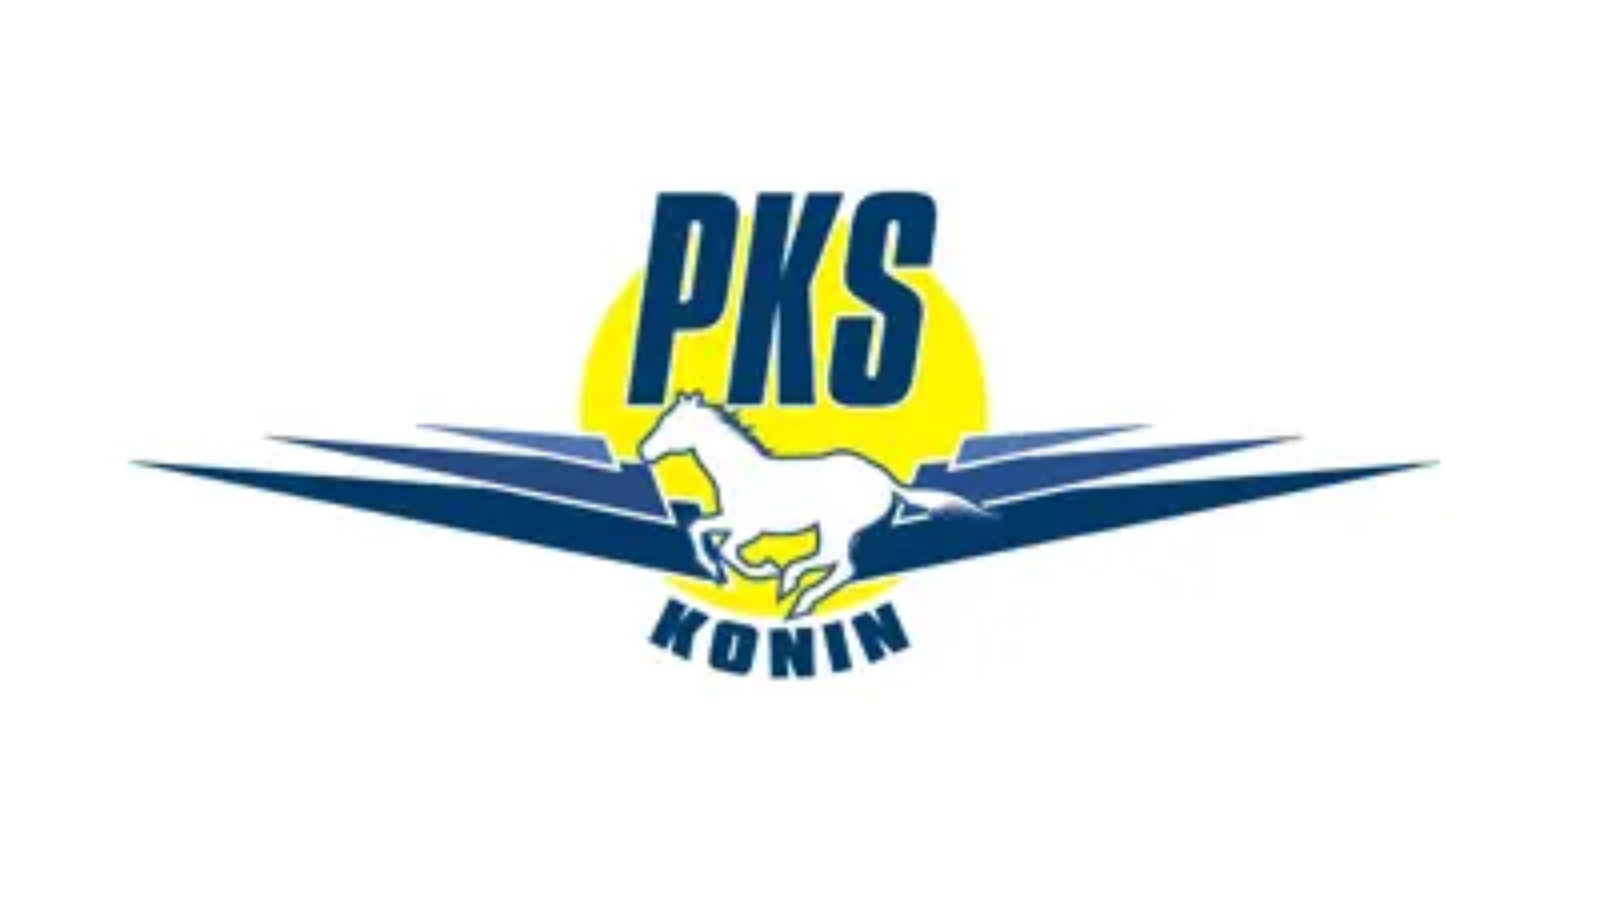 PKS_konin